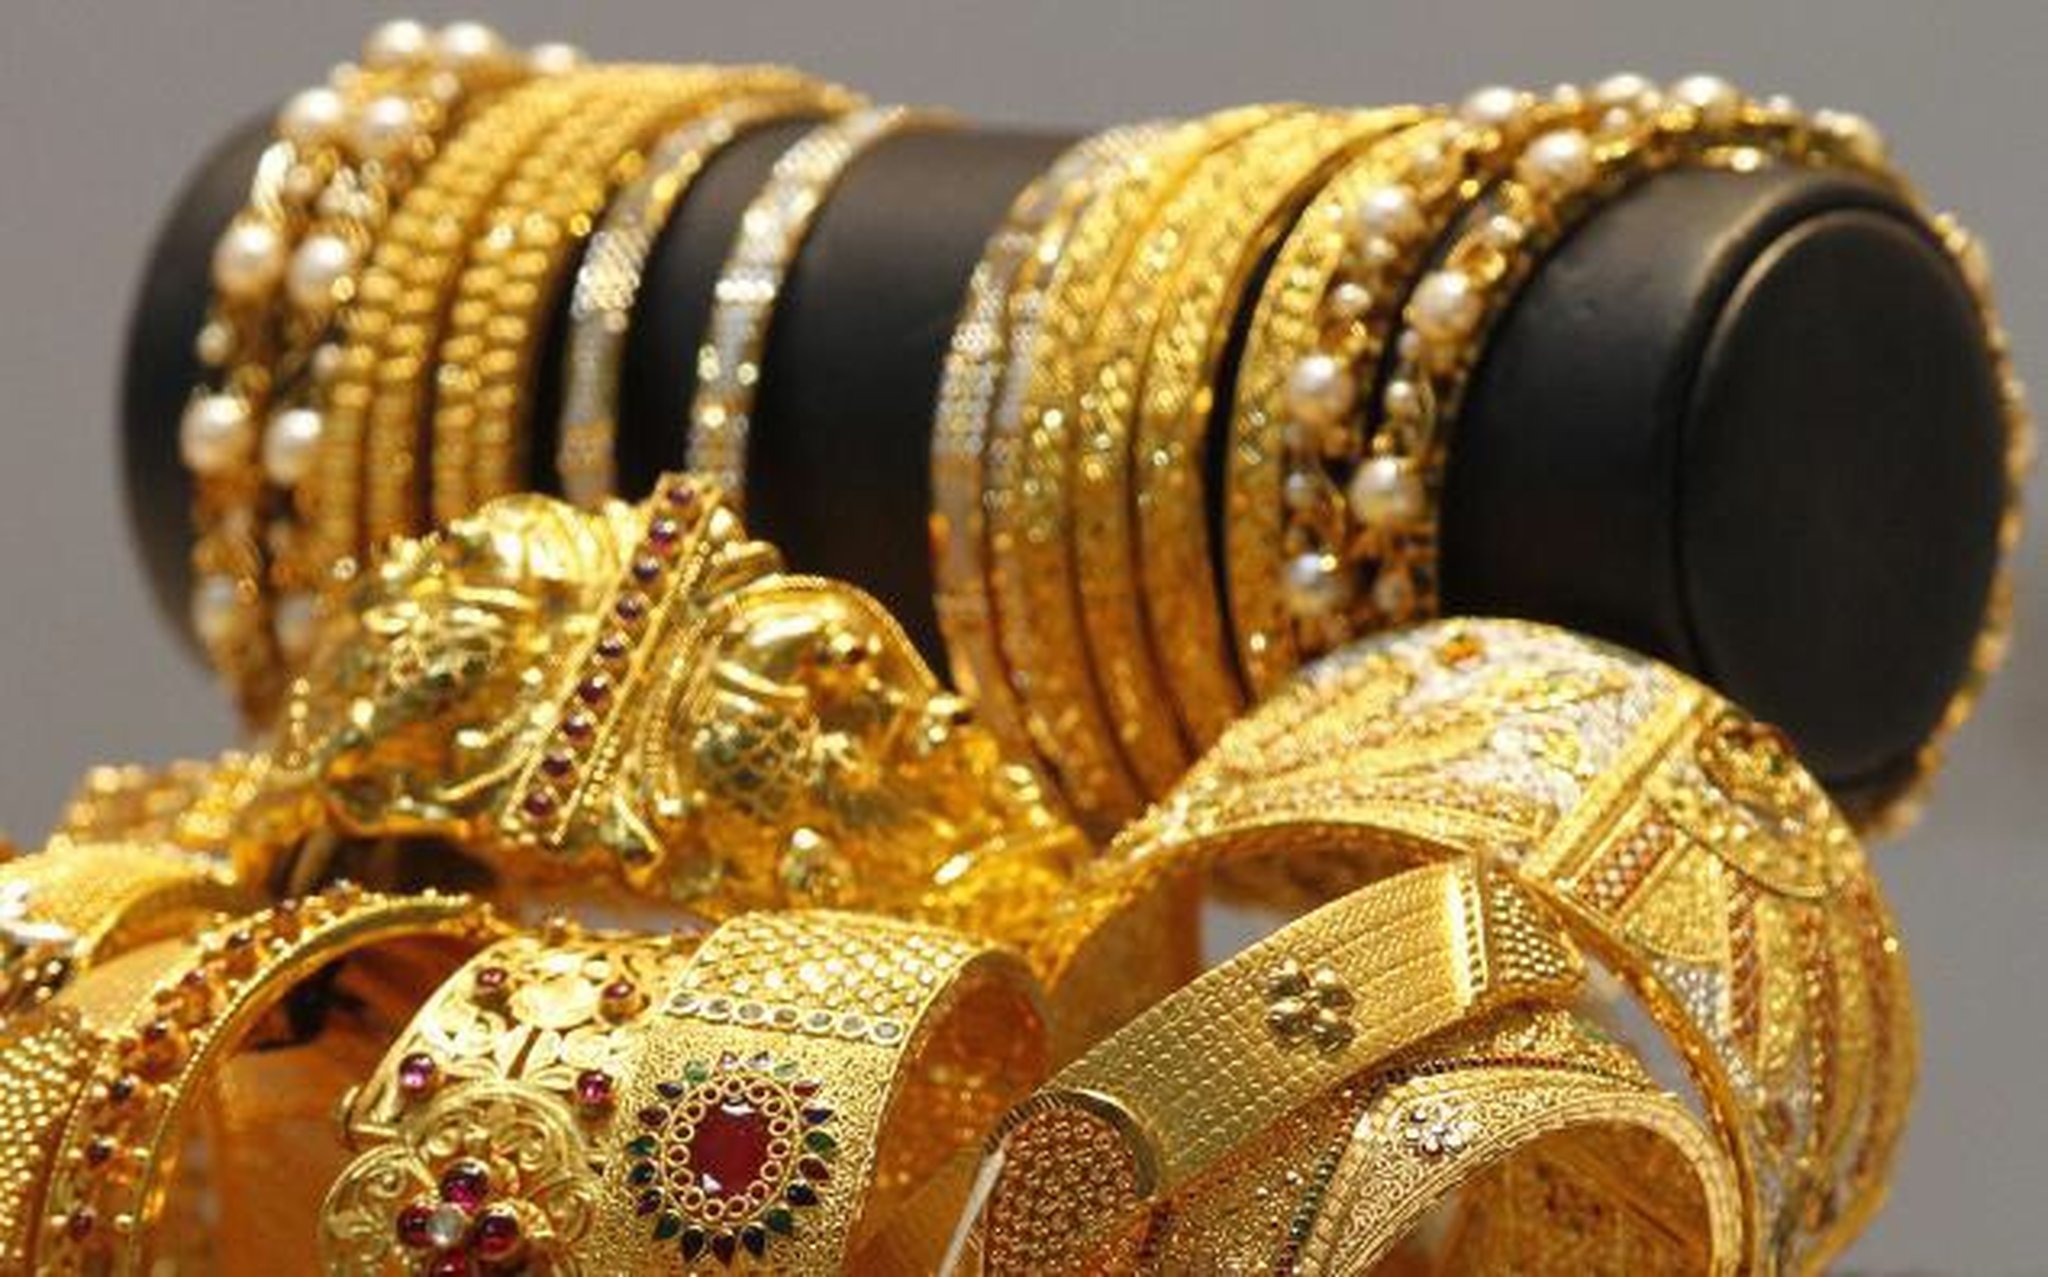 الذهب يتراجع 6 جنيهات تعرف على اسعار الذهب اليوم الجمعة 7-10-2016